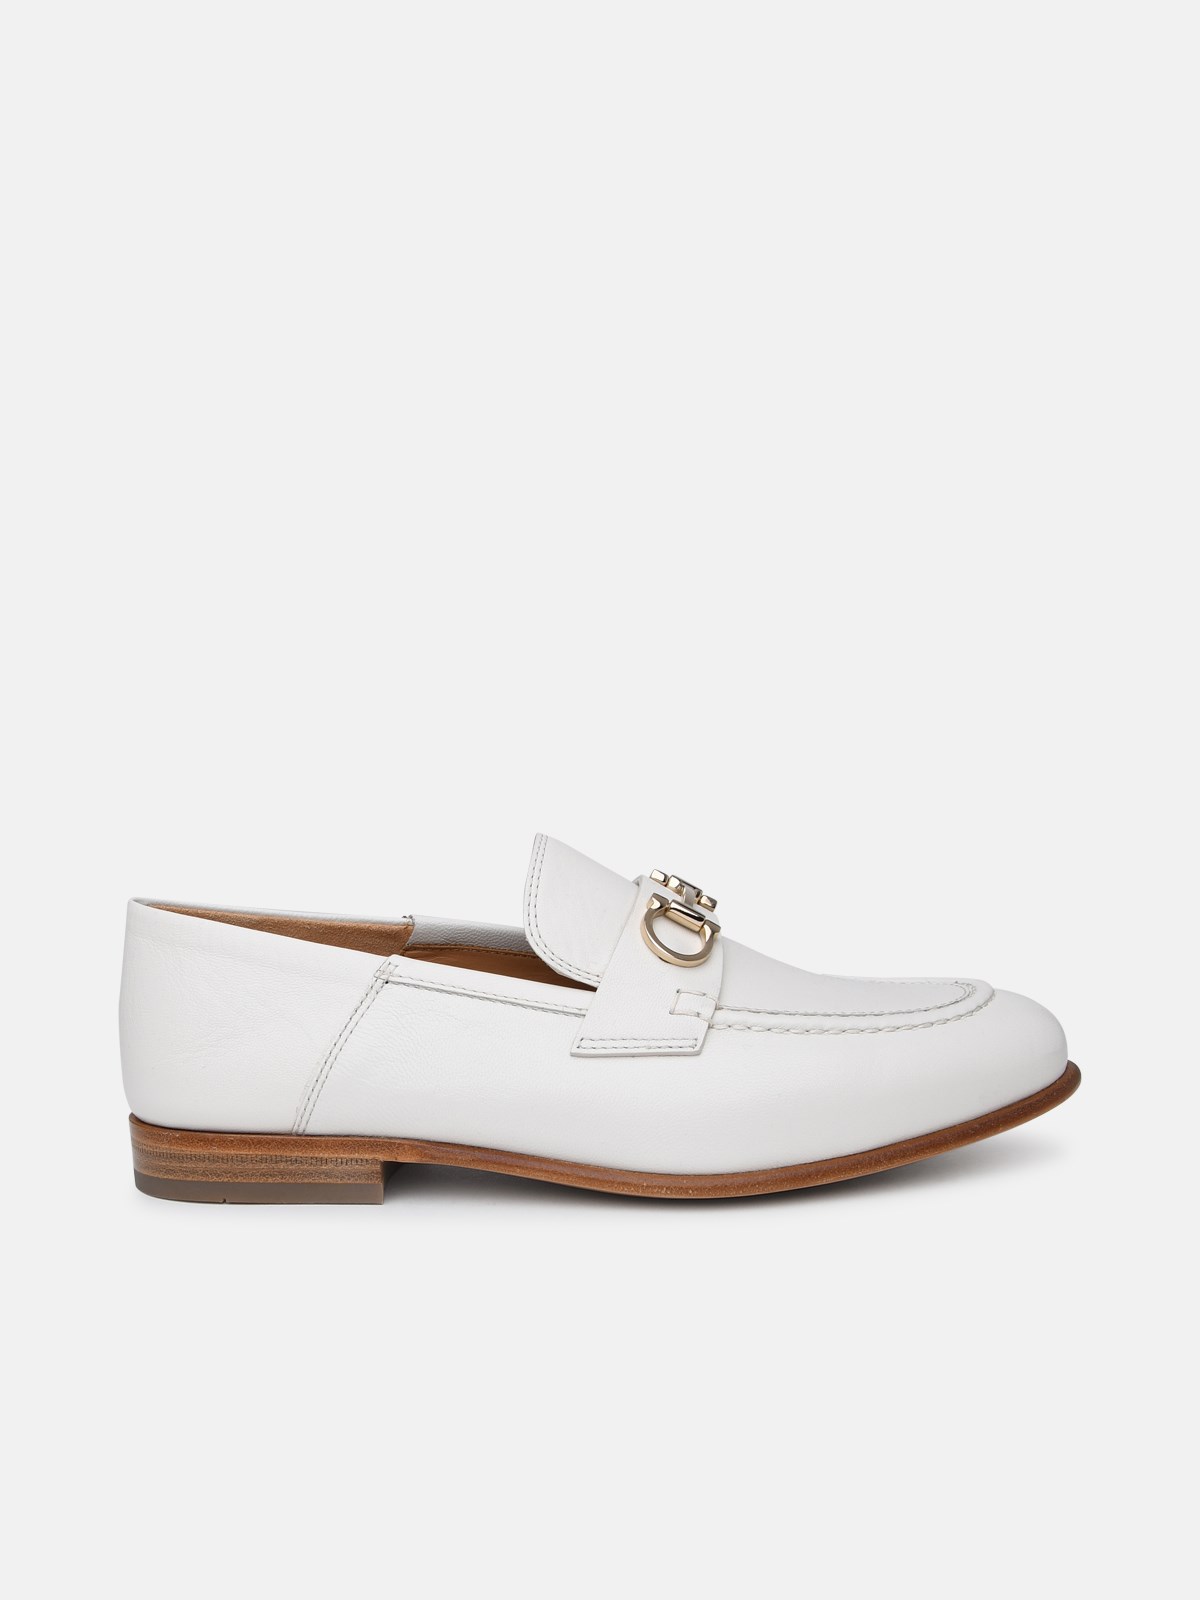 Ferragamo White Leather Loafers In Cream